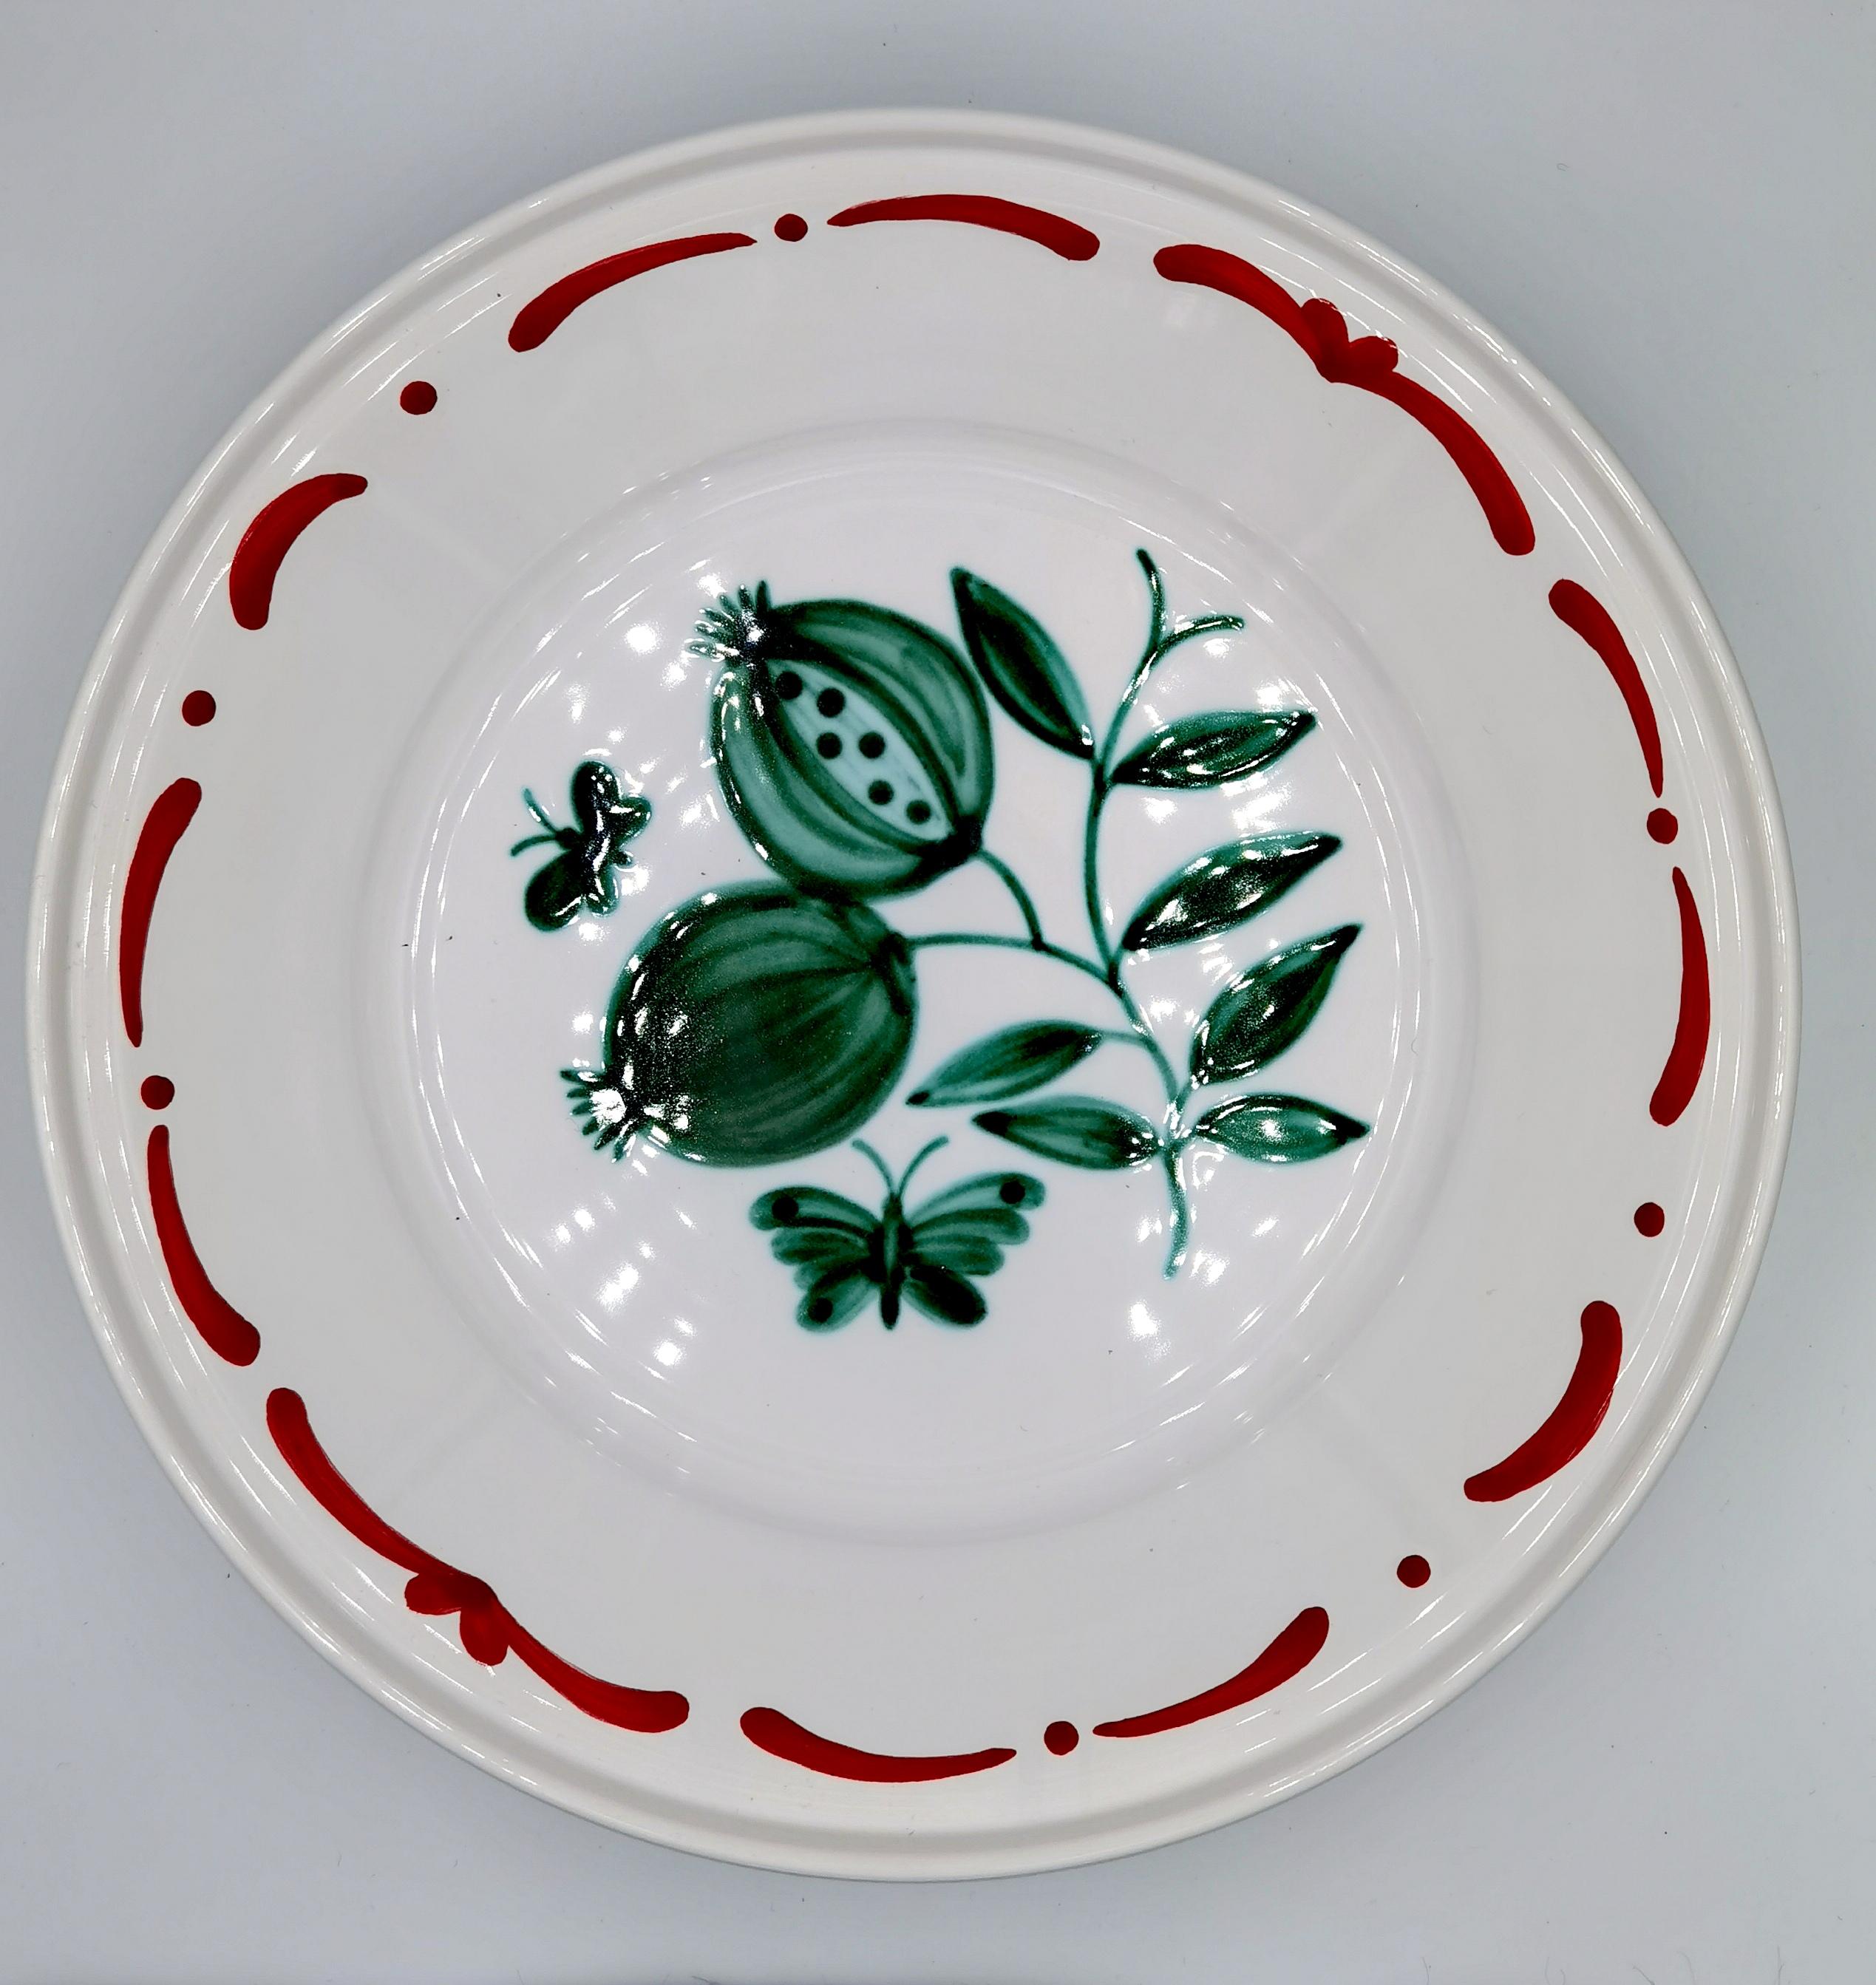 Große freihändig bedruckte Keramikschale im Landhausstil. Verziert mit einem handgemalten grünen Granatapfeldekor in der Mitte mit Schmetterlingen und einer freihändig gemalten Girlande. Die Girlande kann in verschiedenen Farben bestellt werden.